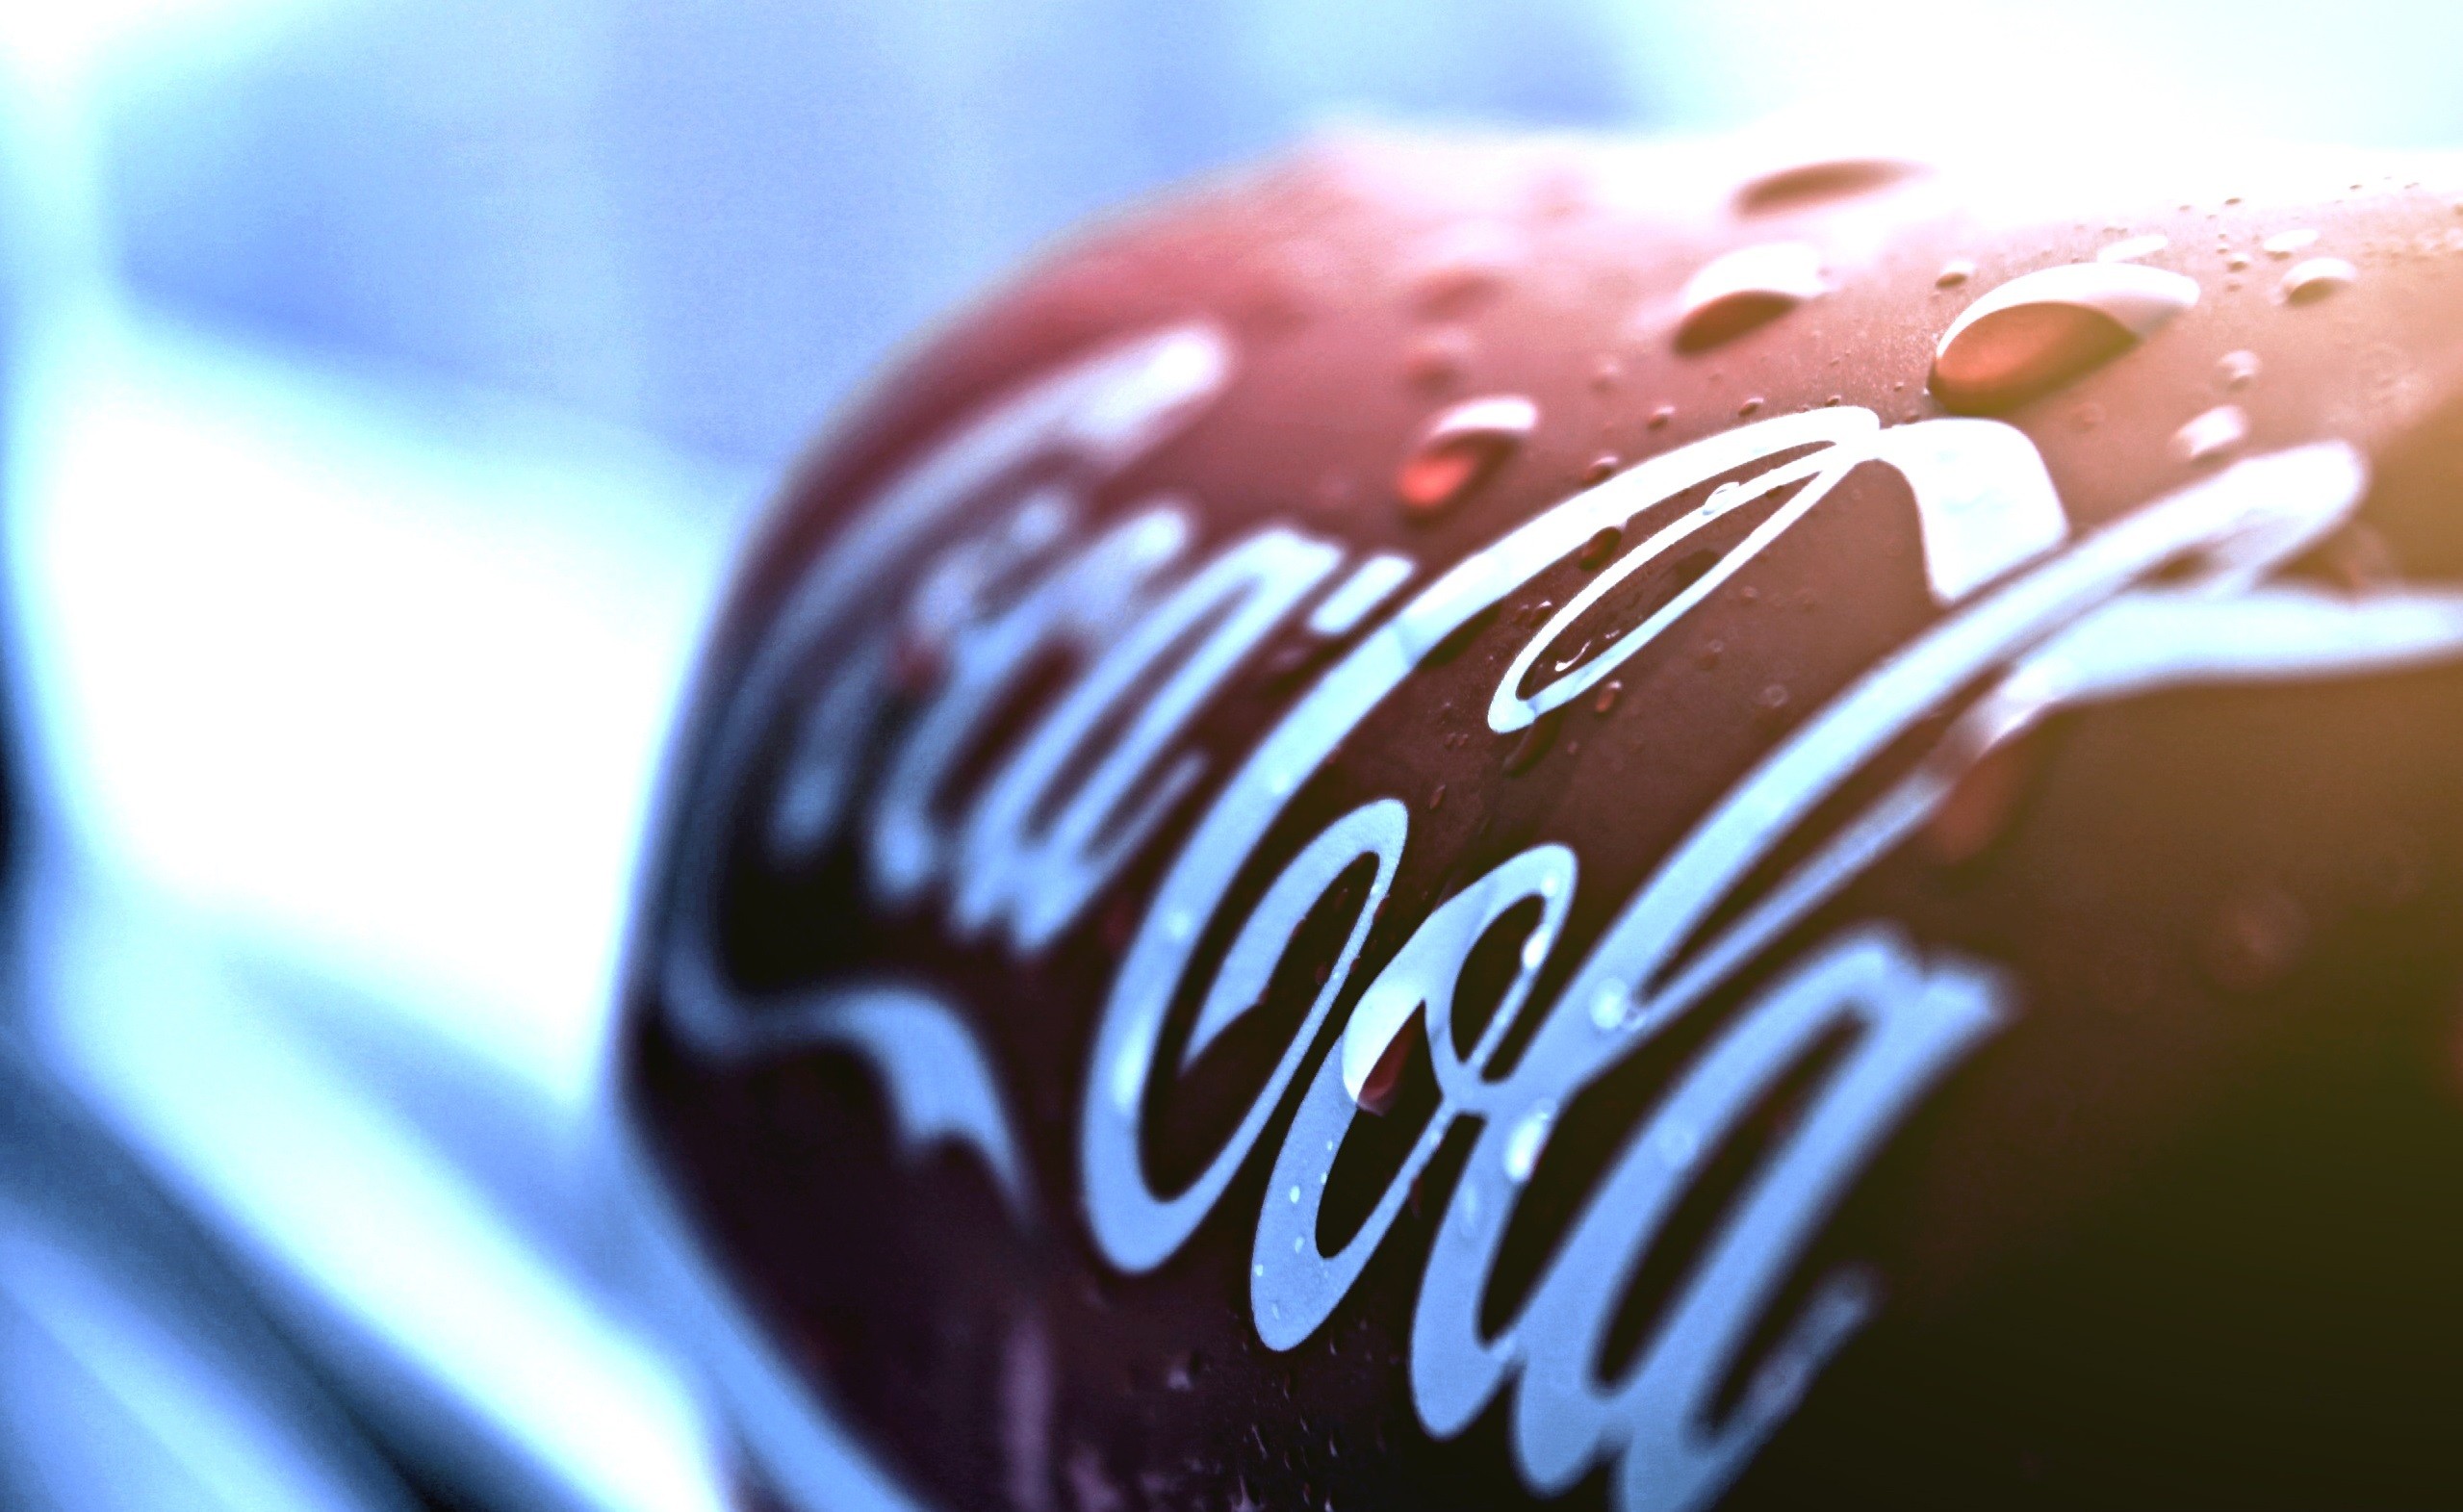 General 2559x1571 can water drops Coca-Cola brand logo closeup